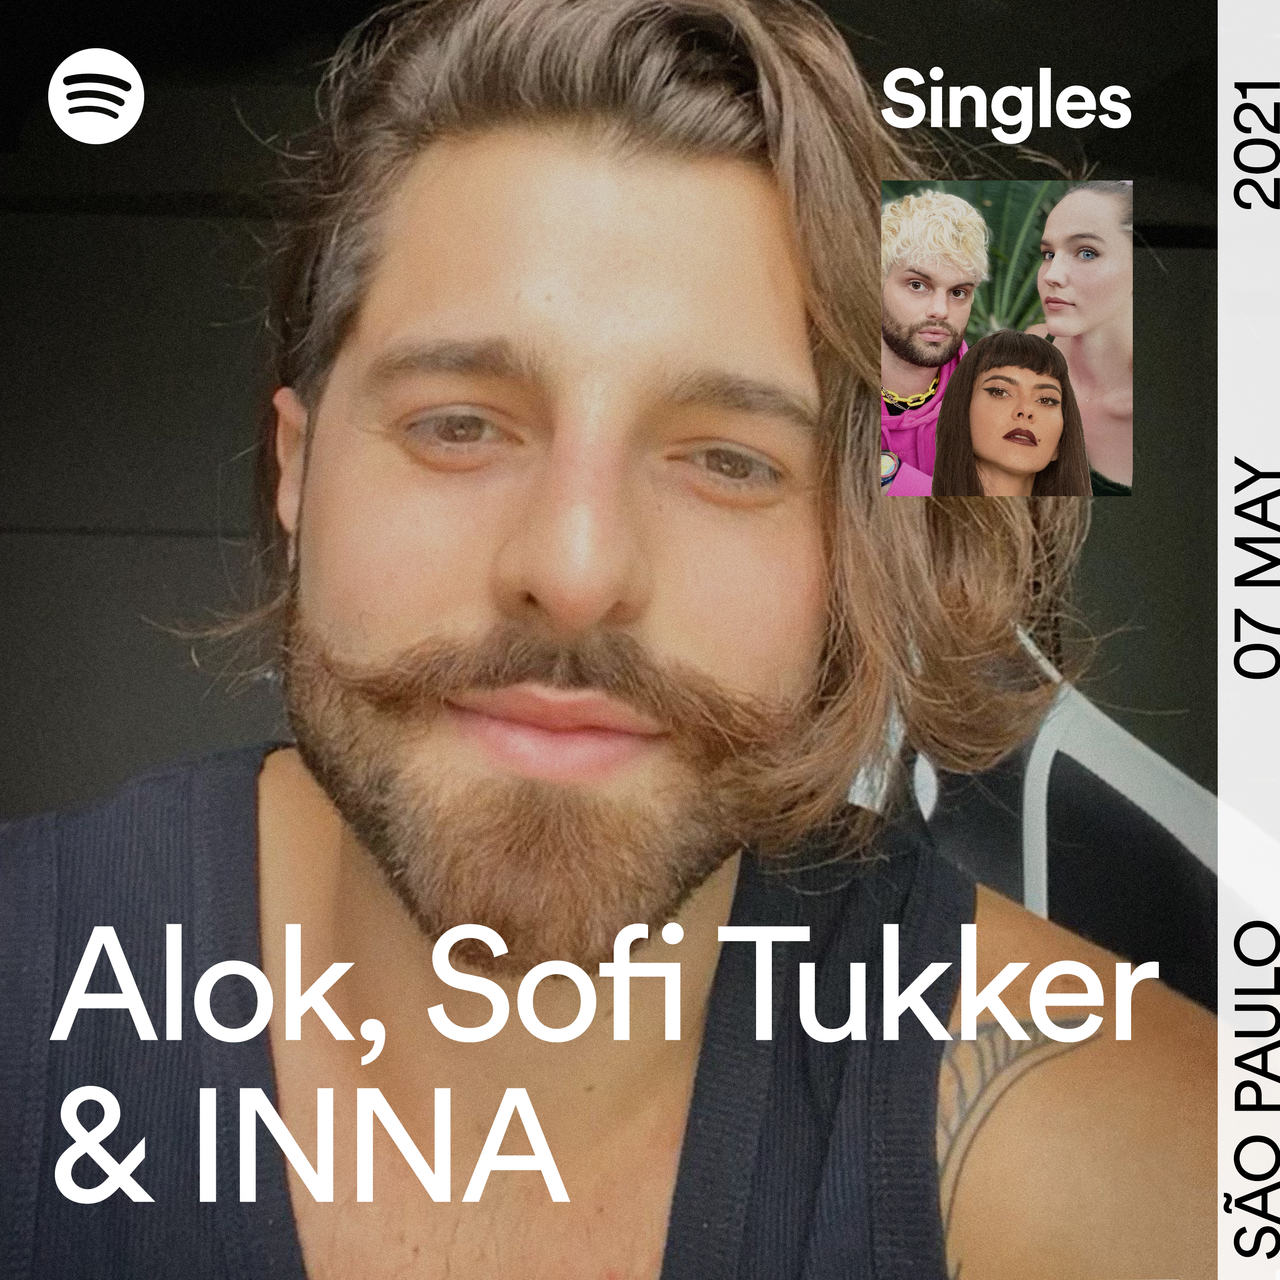 Spotify lança quarta edição do mint Singles com novo feat exclusivo de Alok, Sofi Tukker e INNA 42